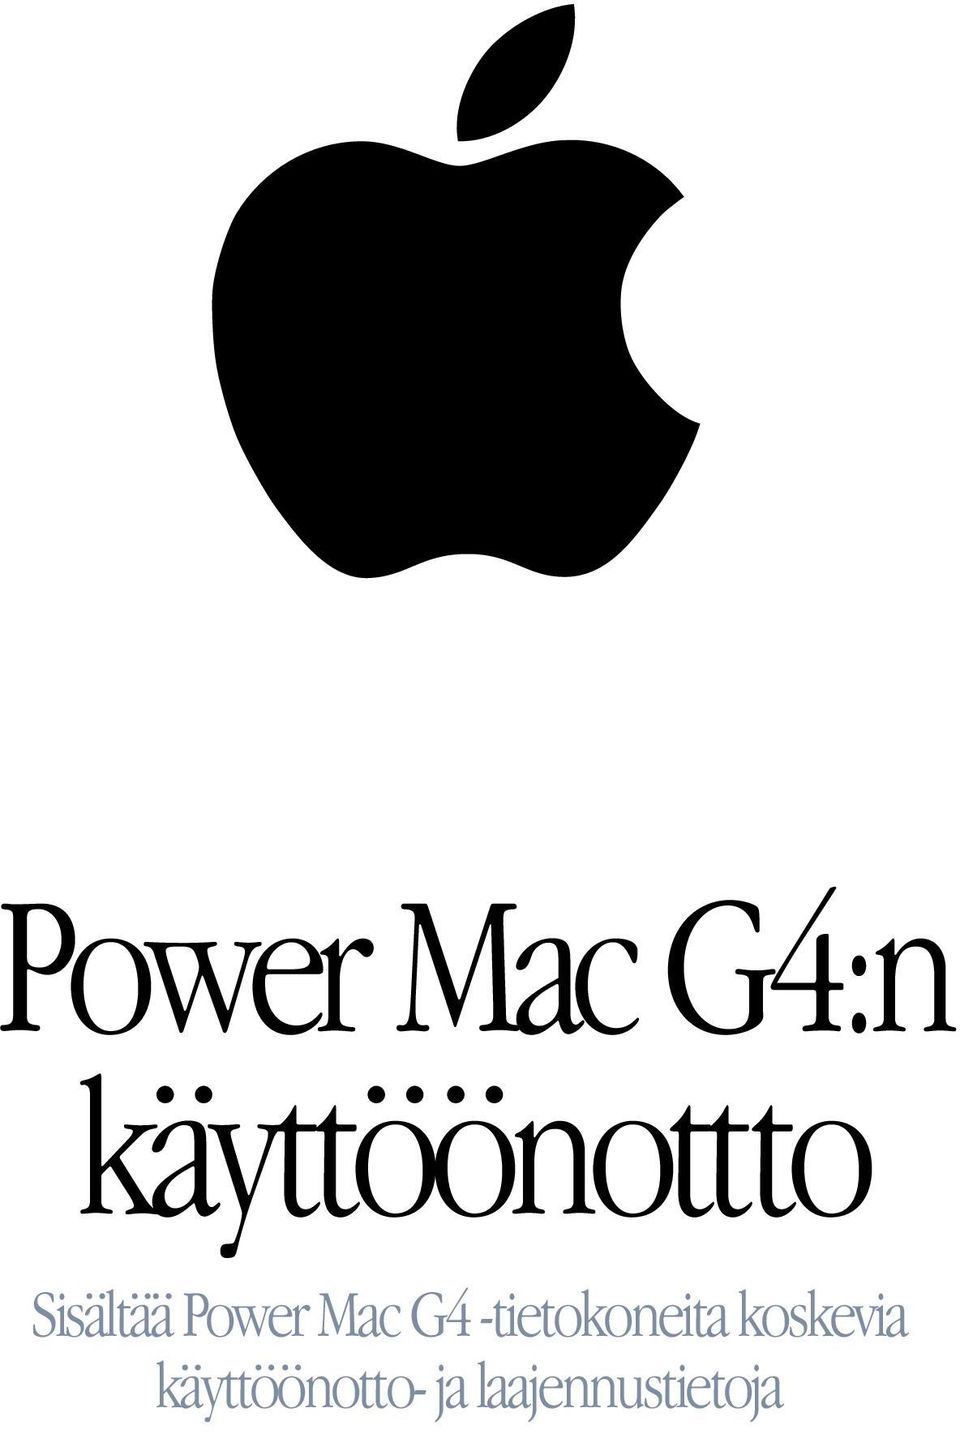 Mac G4 -tietokoneita